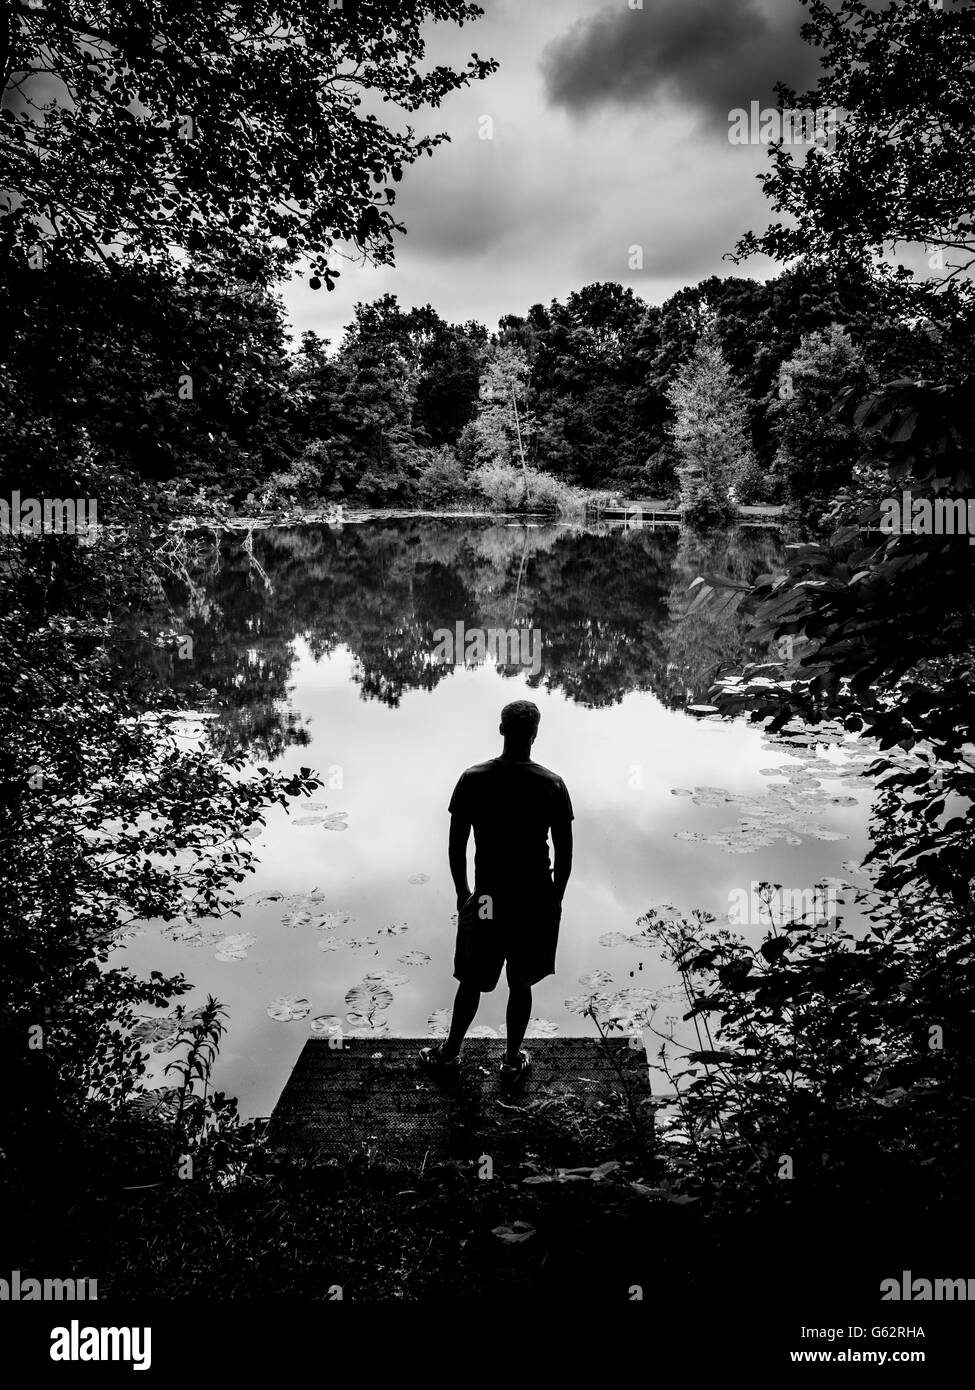 Silhouette di uomo si trovava su un molo di legno che si affacciava sul lago con gli alberi che circondano i bordi Foto Stock